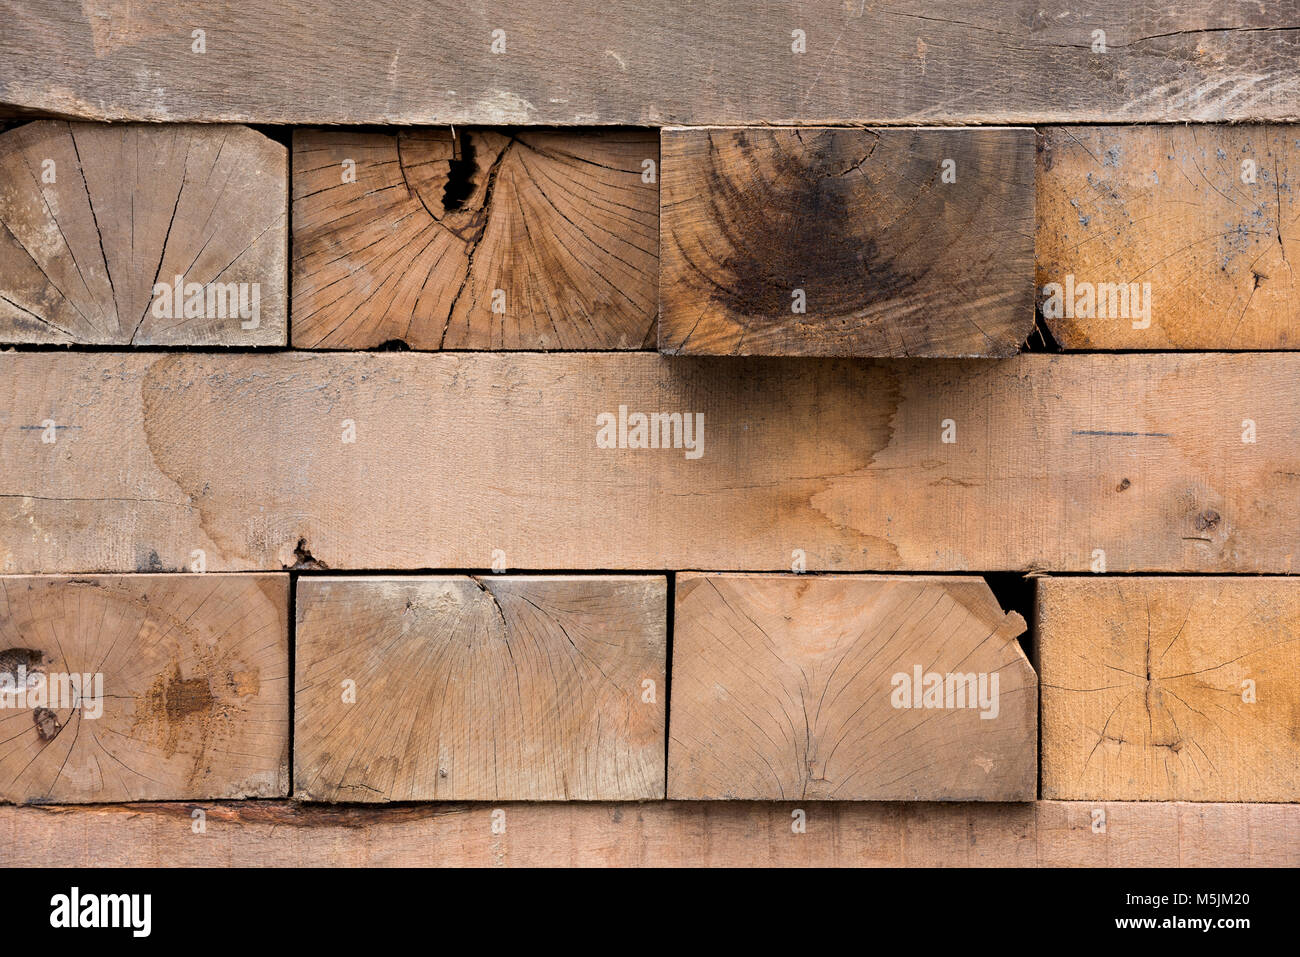 Rectangular wooden beam Stock Photo